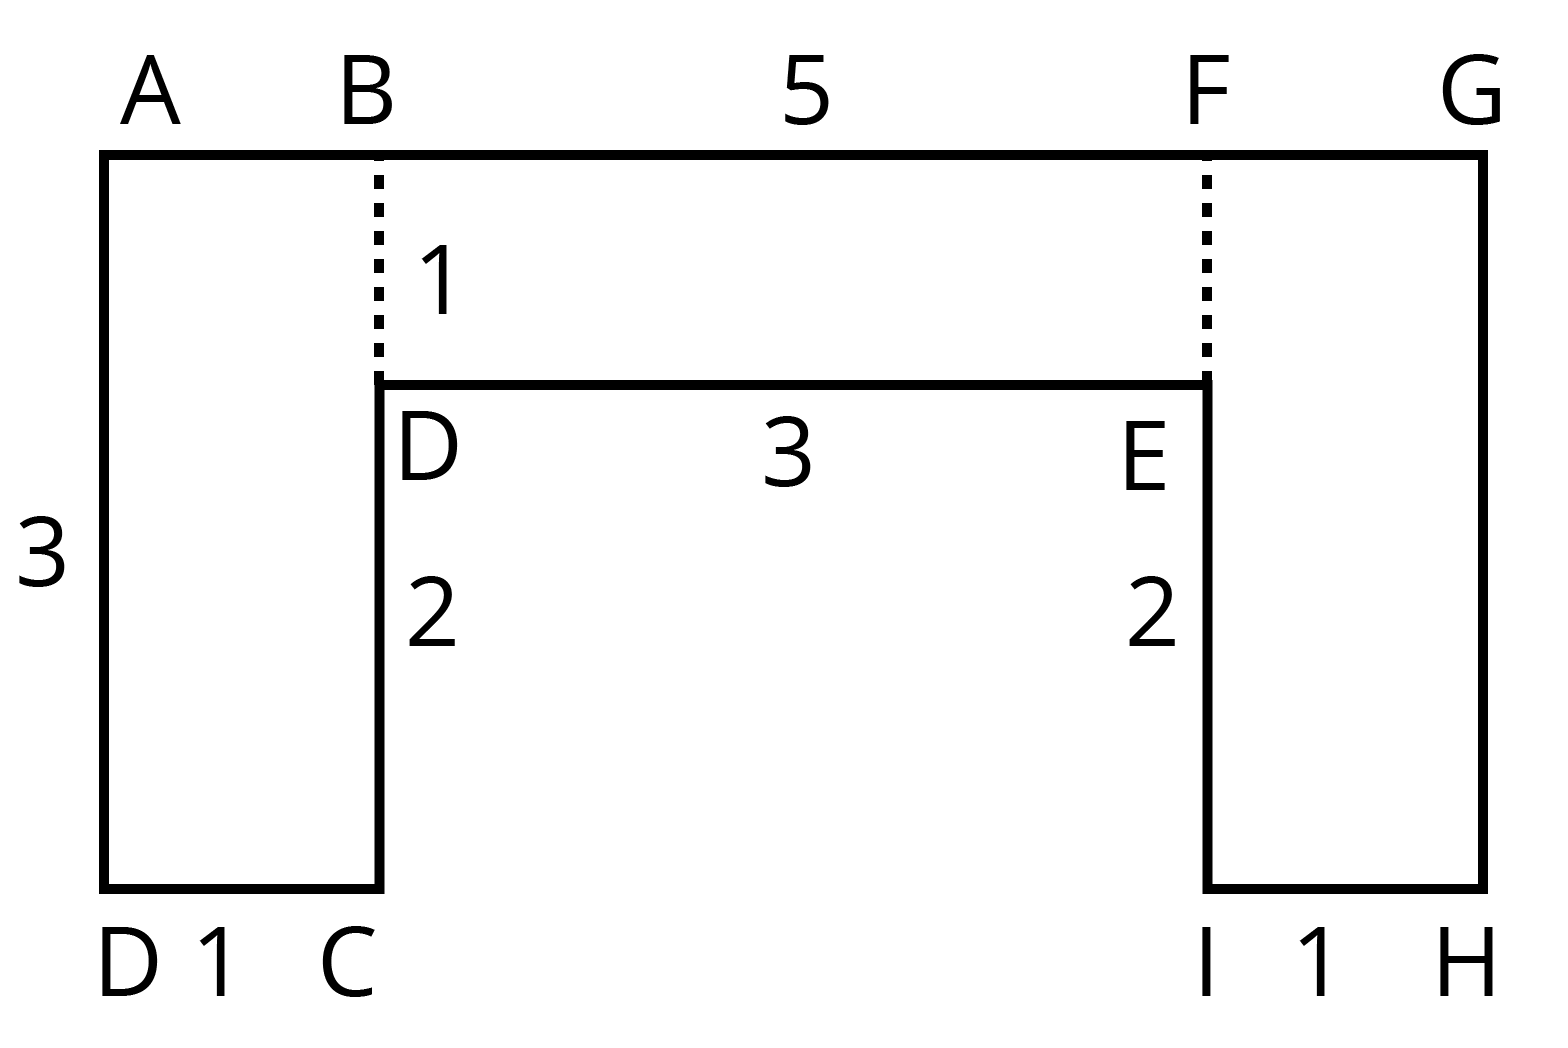 आकृति जिसे विभिन्न आयतों (दो आयत समान) में विभाजित किया है